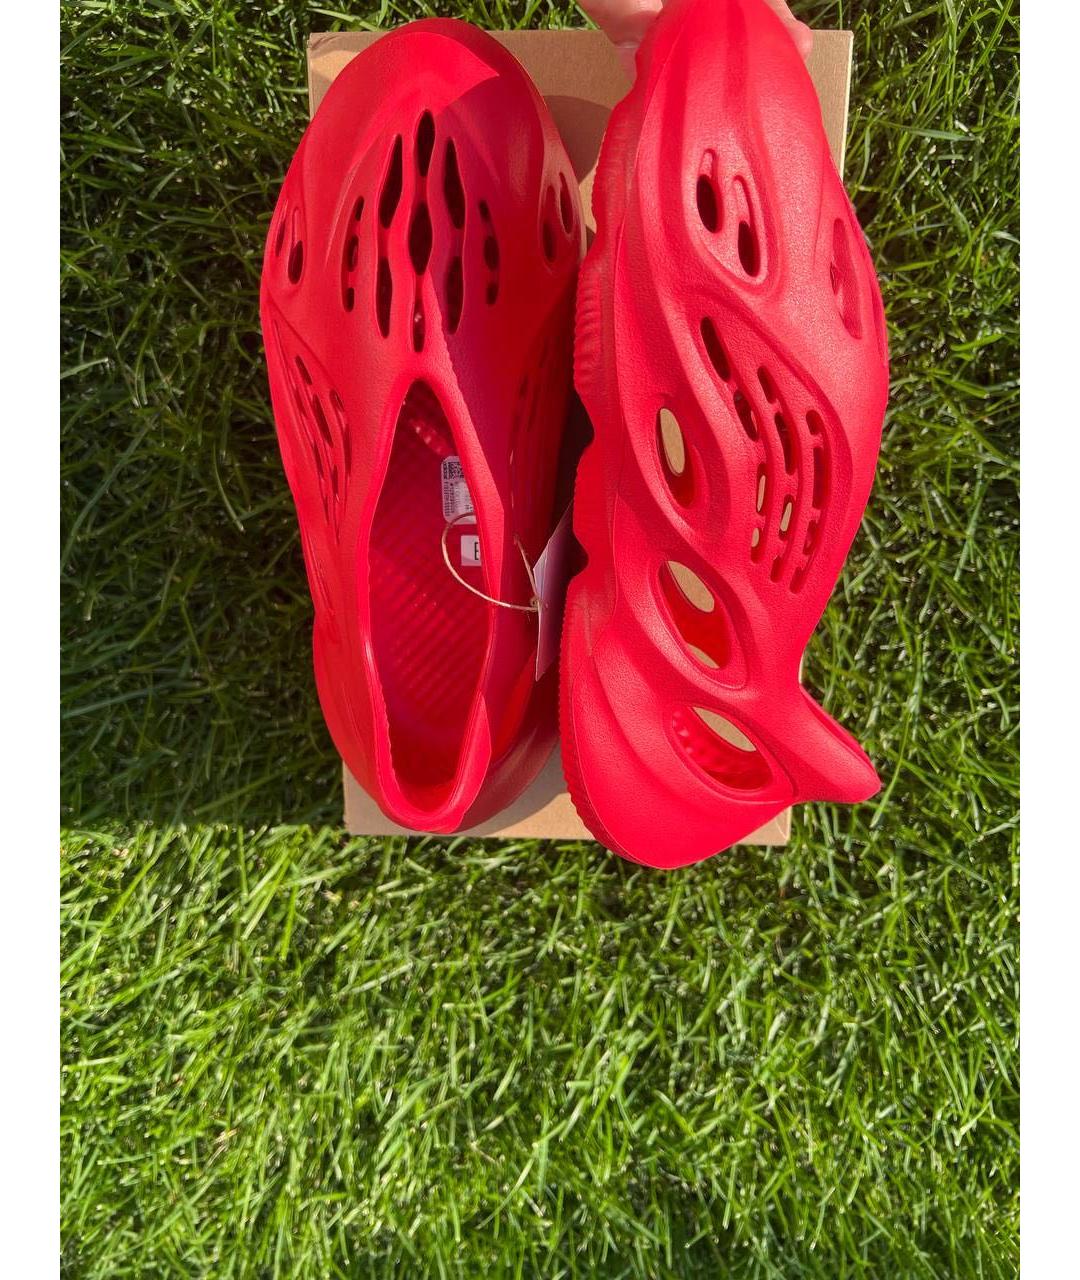 ADIDAS YEEZY Красные резиновые кроссовки, фото 3